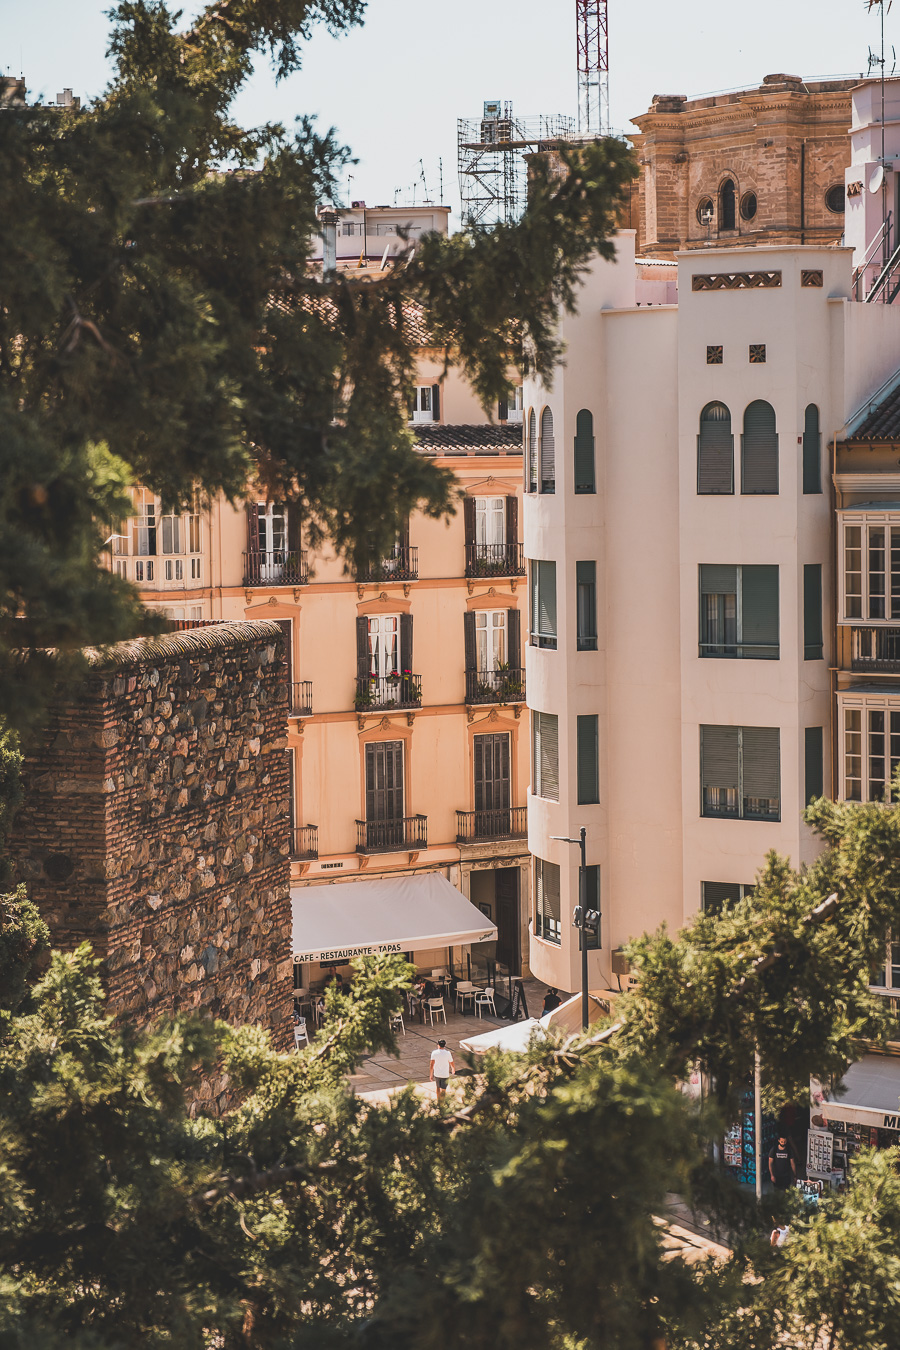 Vous souhaitez visiter Malaga en 1 jour à pied ? Plongez dans l'atmosphère vibrante de cette ville incontournable d'Andalousie. Explorez ses monuments historiques, ses plages ensoleillées et ses paysages pittoresques. Idéal pour votre Europe bucket list, ce guide vous dévoile les meilleures étapes pour un road trip en Espagne. Préparez-vous à être émerveillé par la beauté de Malaga. Cliquez maintenant pour commencer votre aventure et ajouter une nouvelle destination à votre voyage européen !